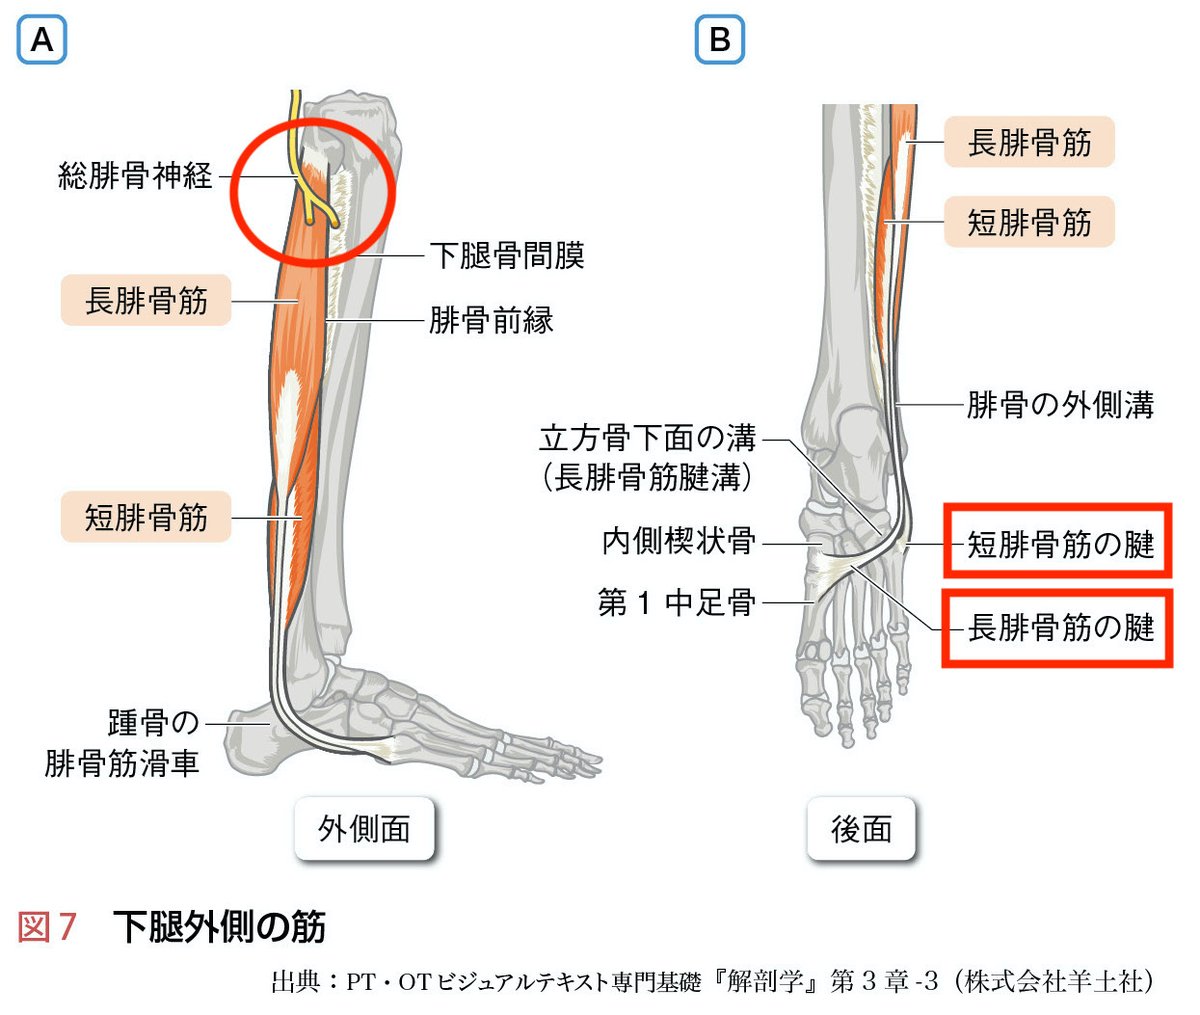 材料強さ学 解剖学アトラス 基礎運動学 義肢学 人体の構造と機能-